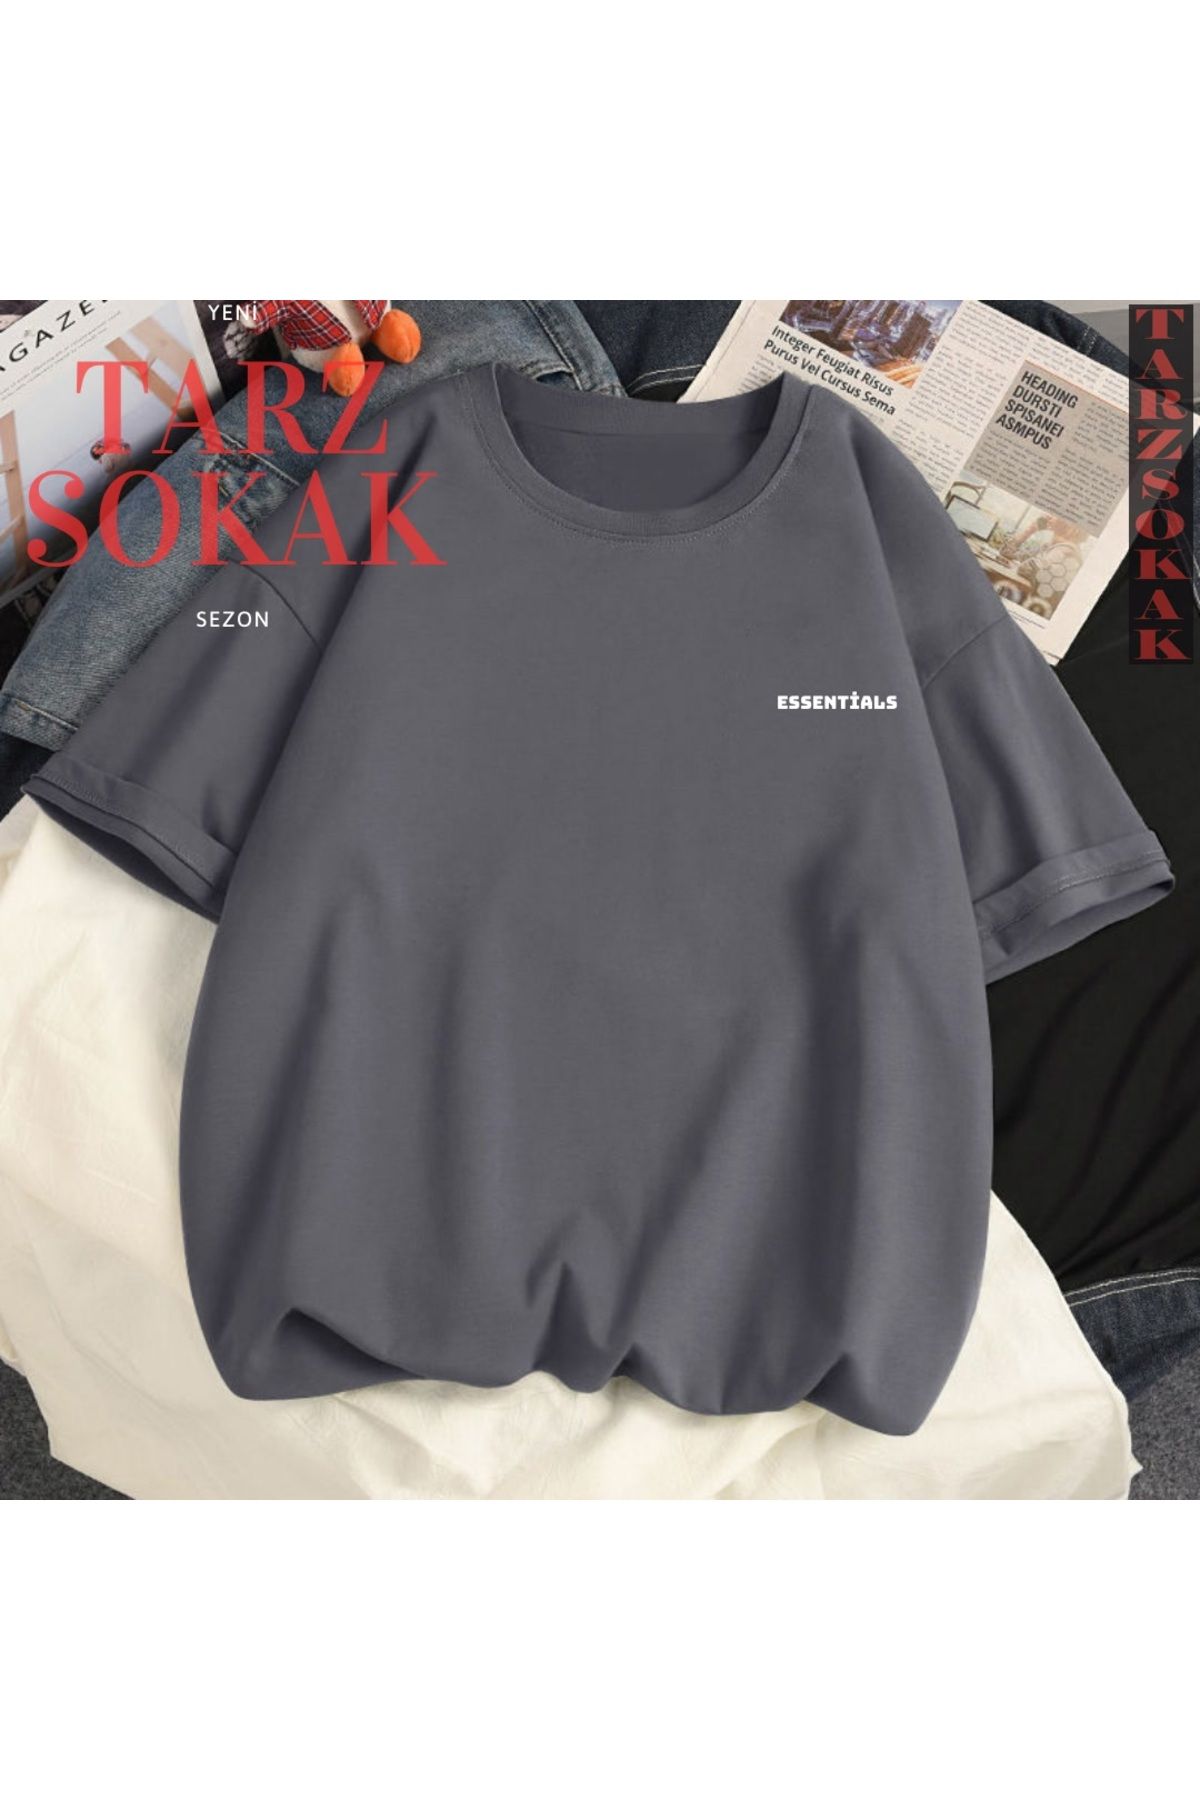 Tarzsokak Unisex Kadın/Erkek ESSENTİALS Yazı Özel Renkli Oversize Bisiklet Yaka Pamuklu T-Shirt